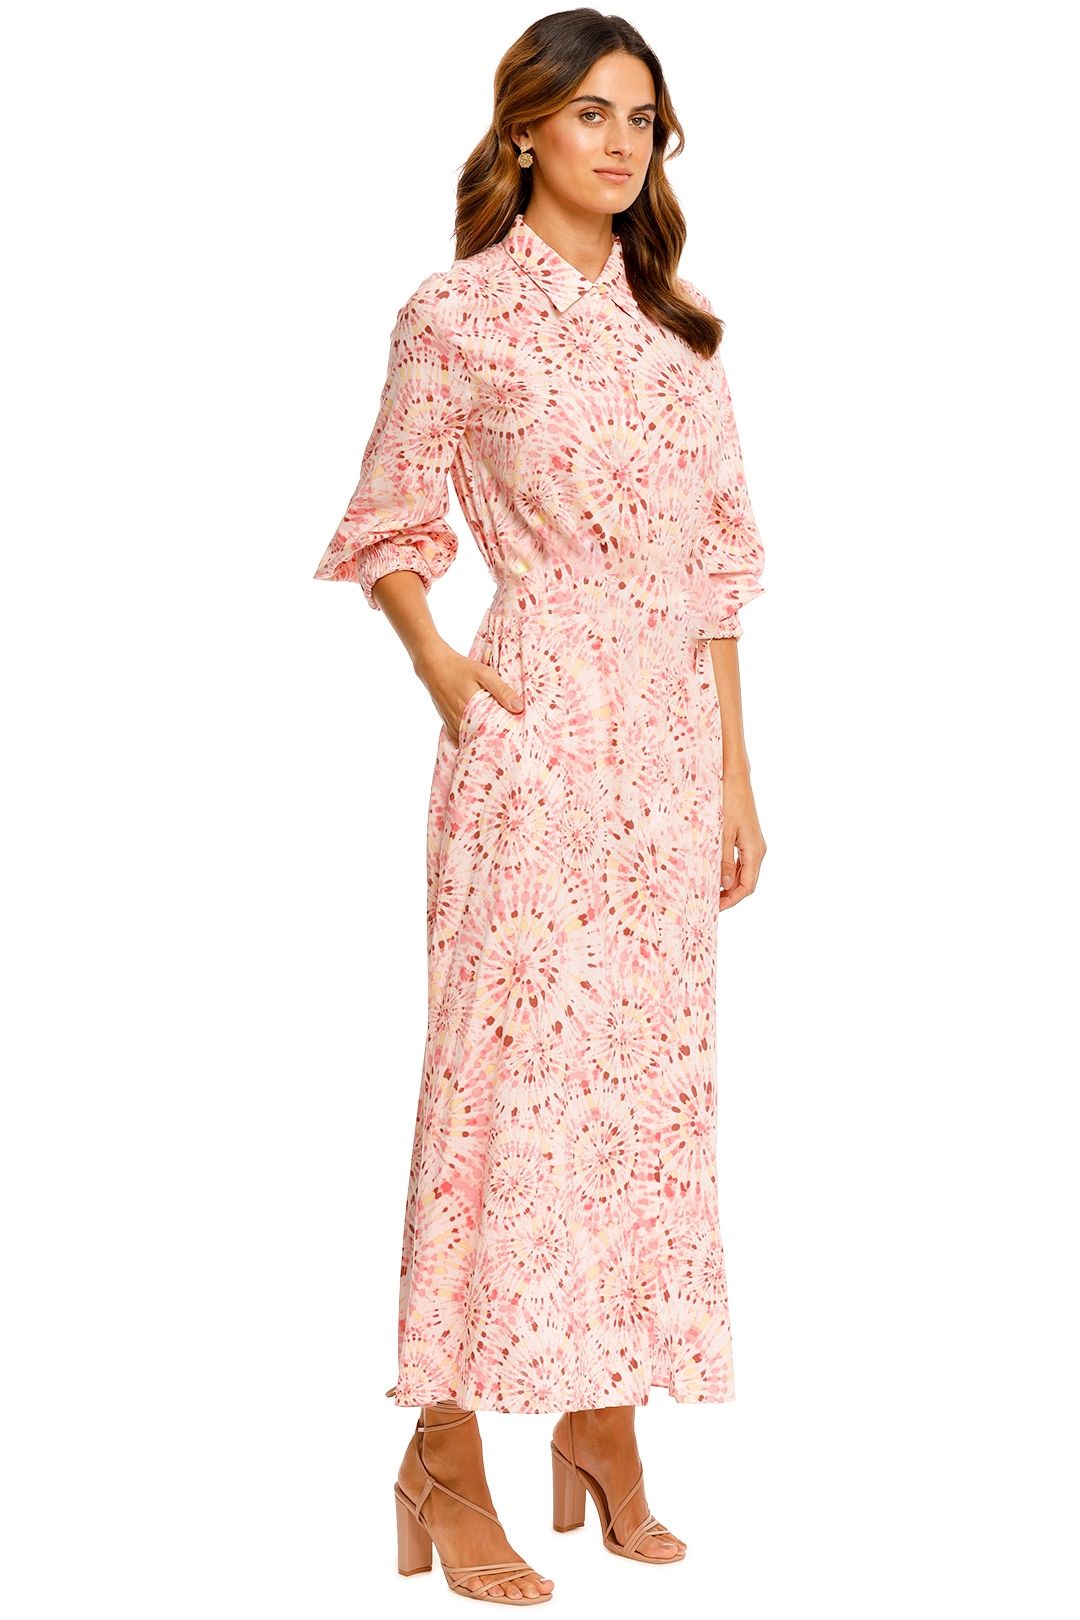 Misa LA Bettina Dress Pink Print